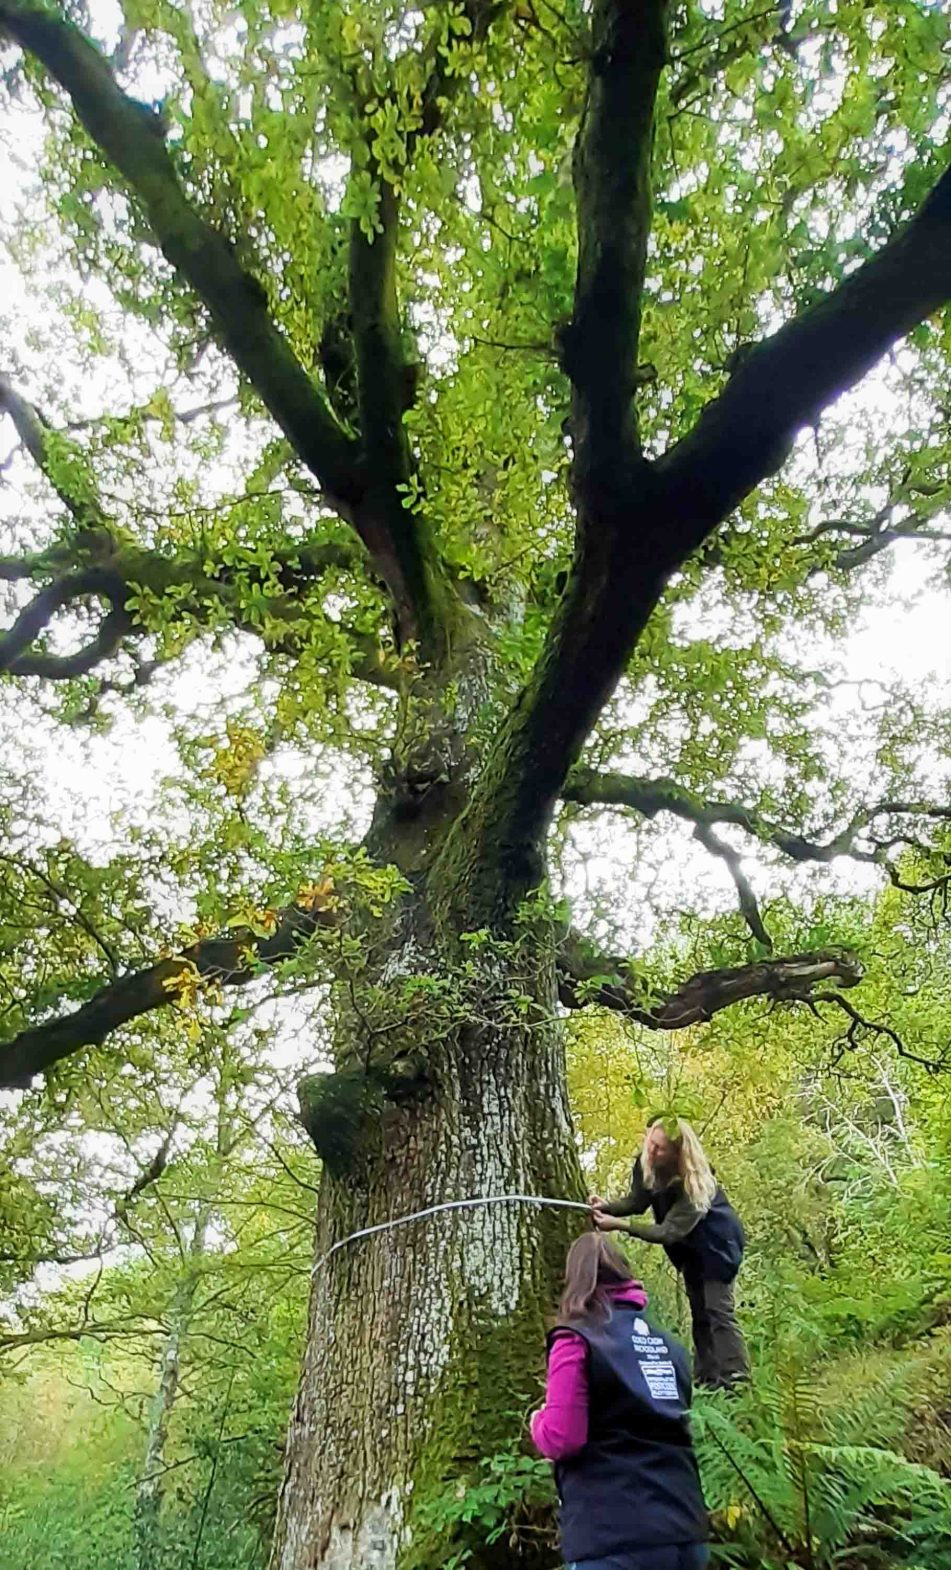 Woodland Trust's Kirsten Manley and Kylie measuring a veteran tree in Coed Felenrhyd.